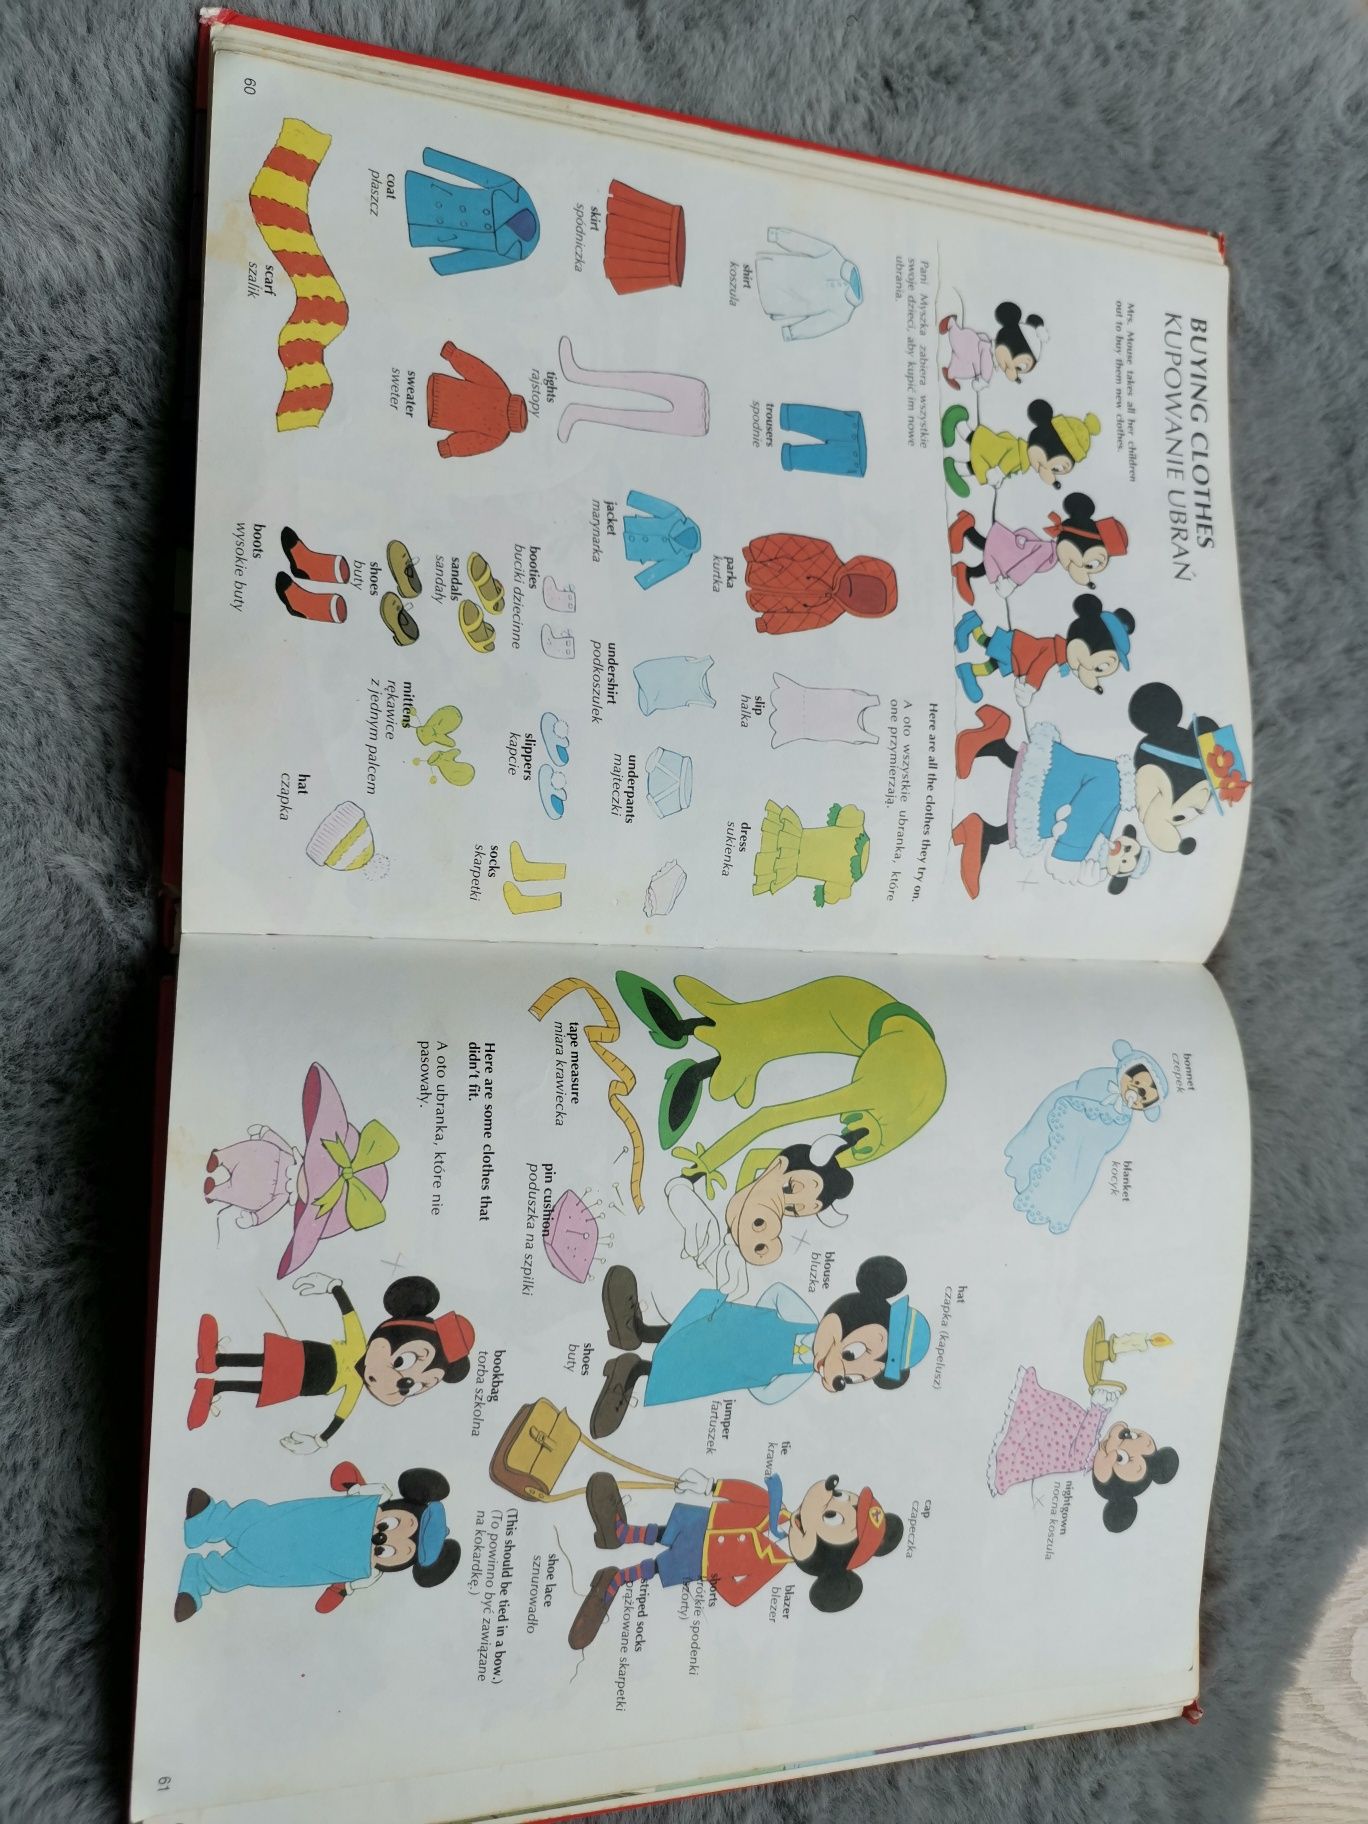 Wielki Ilustrowany słownik angielsko polski Walt Disney